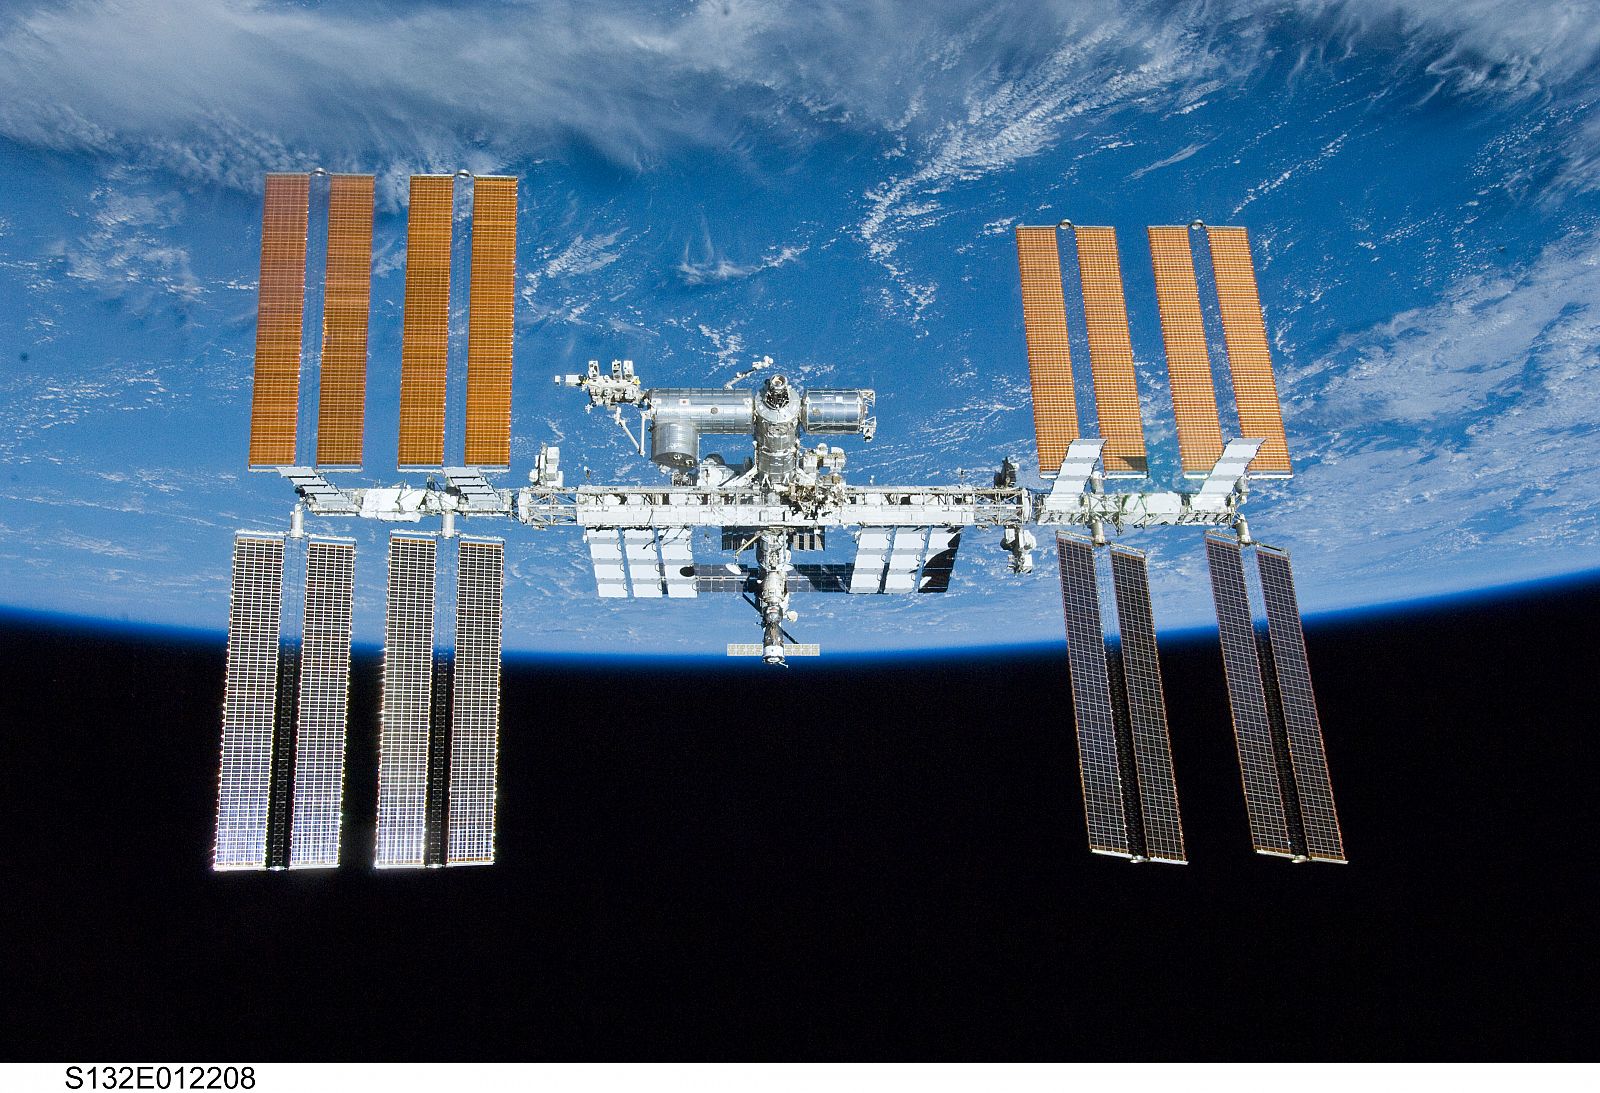 La Estación Espacial Internacional en su configuración actual, tras la visita del Atlantis en la misión STS-132 en mayo de 2010